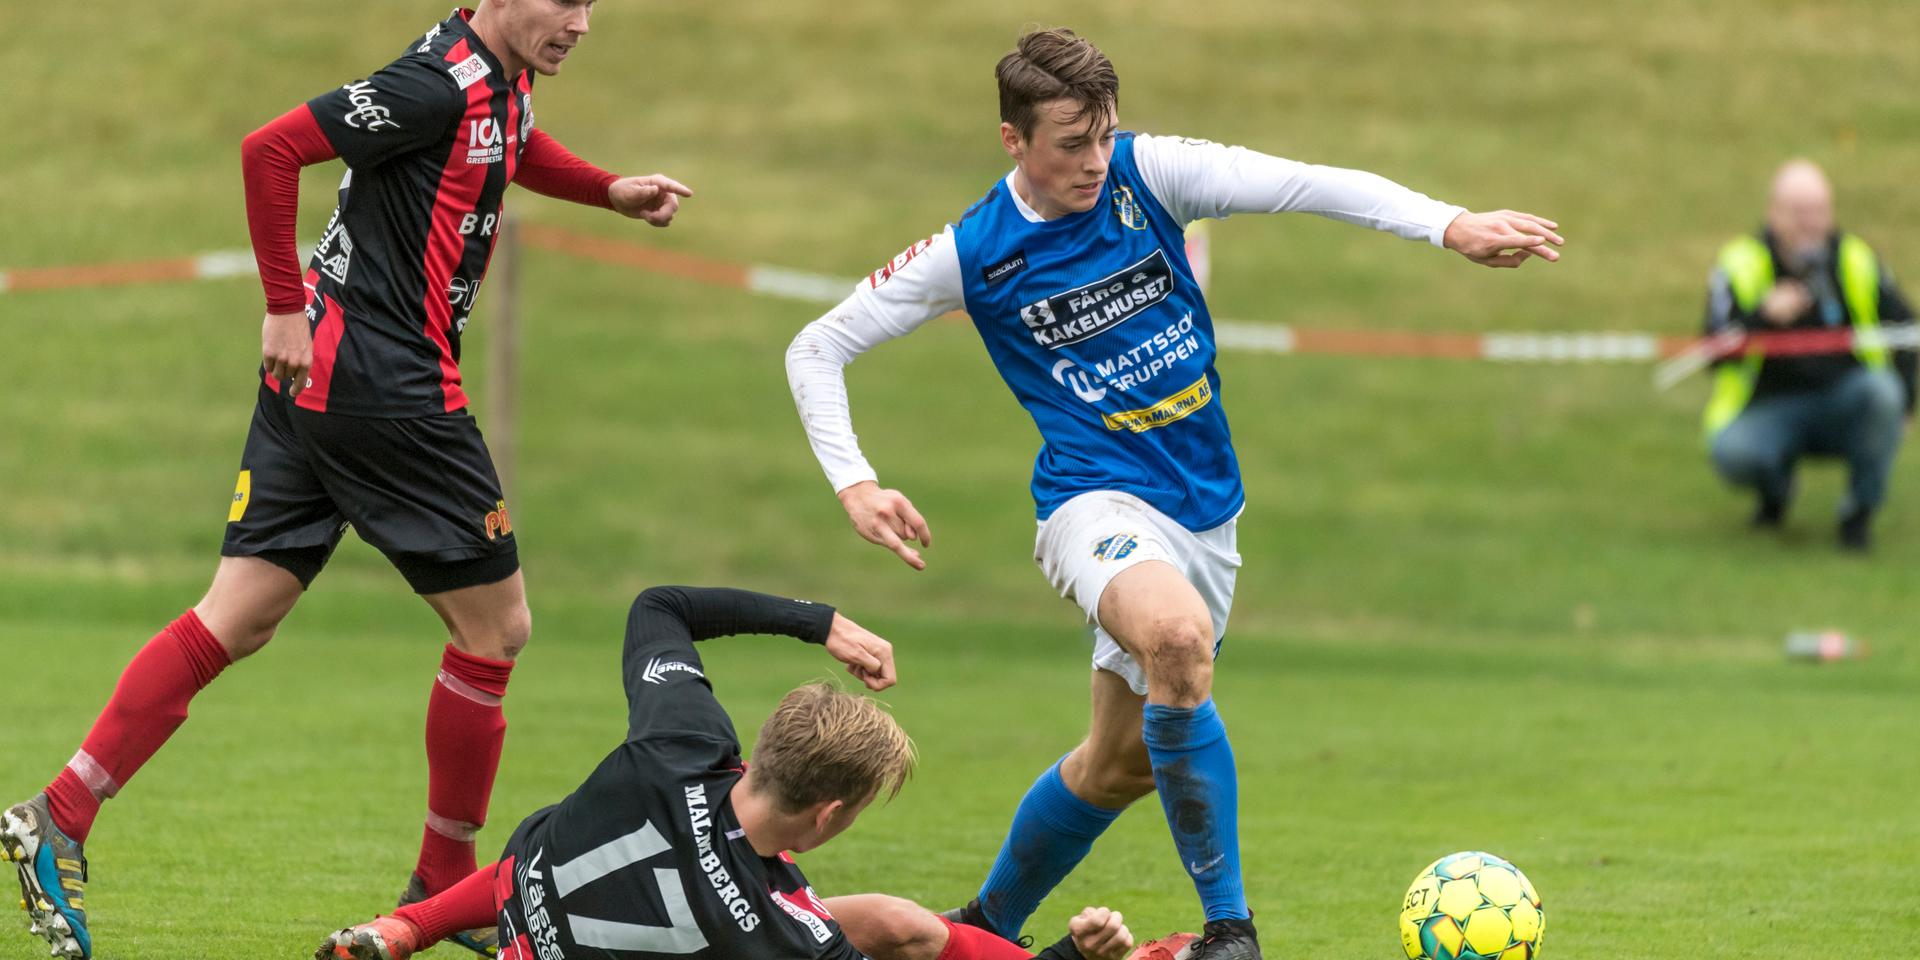 Oddevold och Grebbestad är två av lagen vars matcher kommer sändas på Bohusläningen under säsongen. 